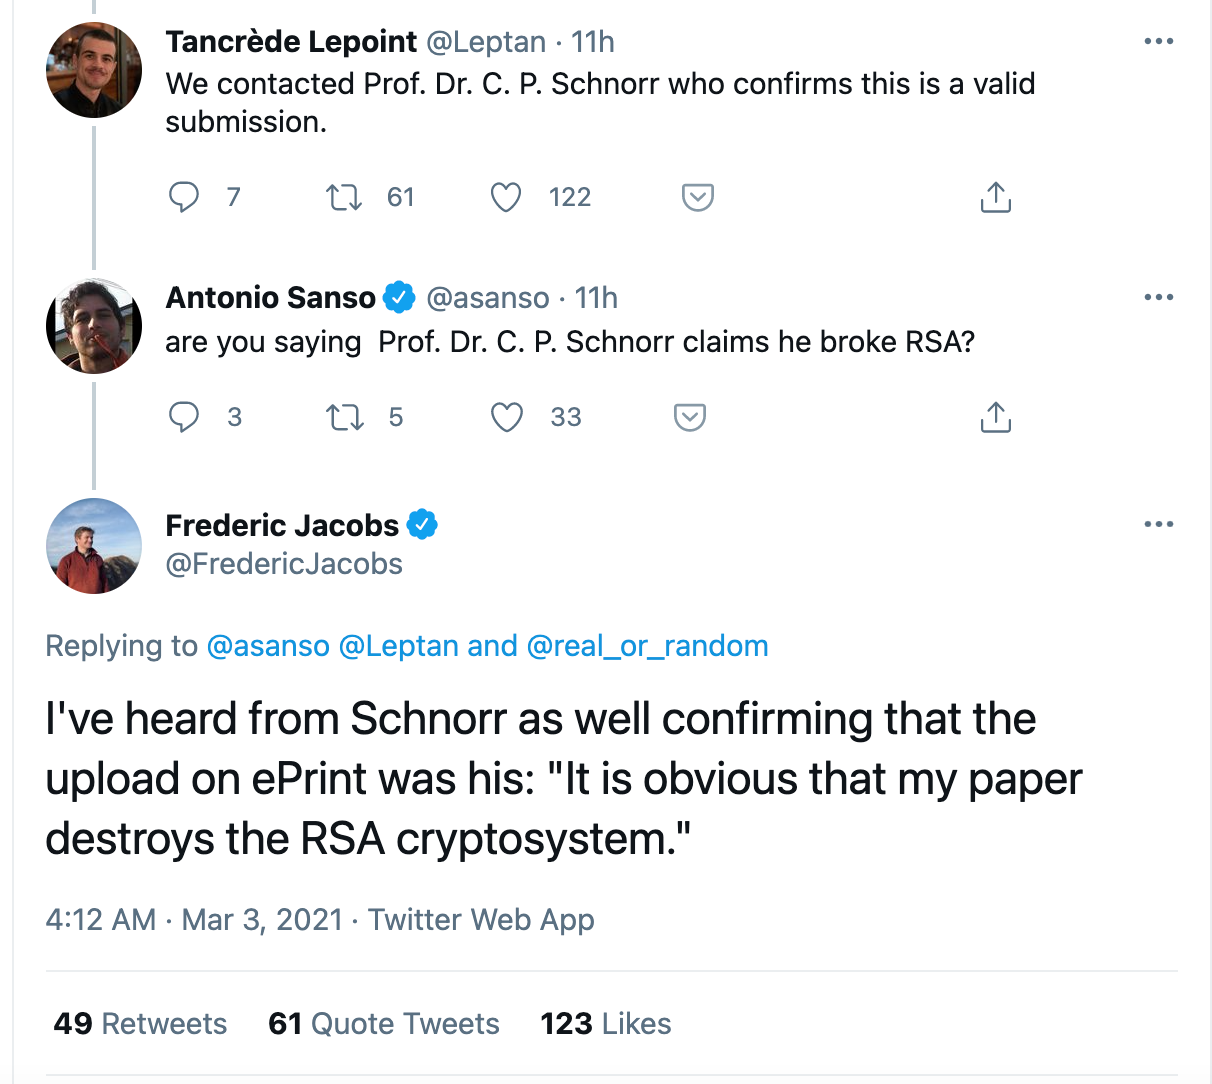 schnorr destroyes RSA